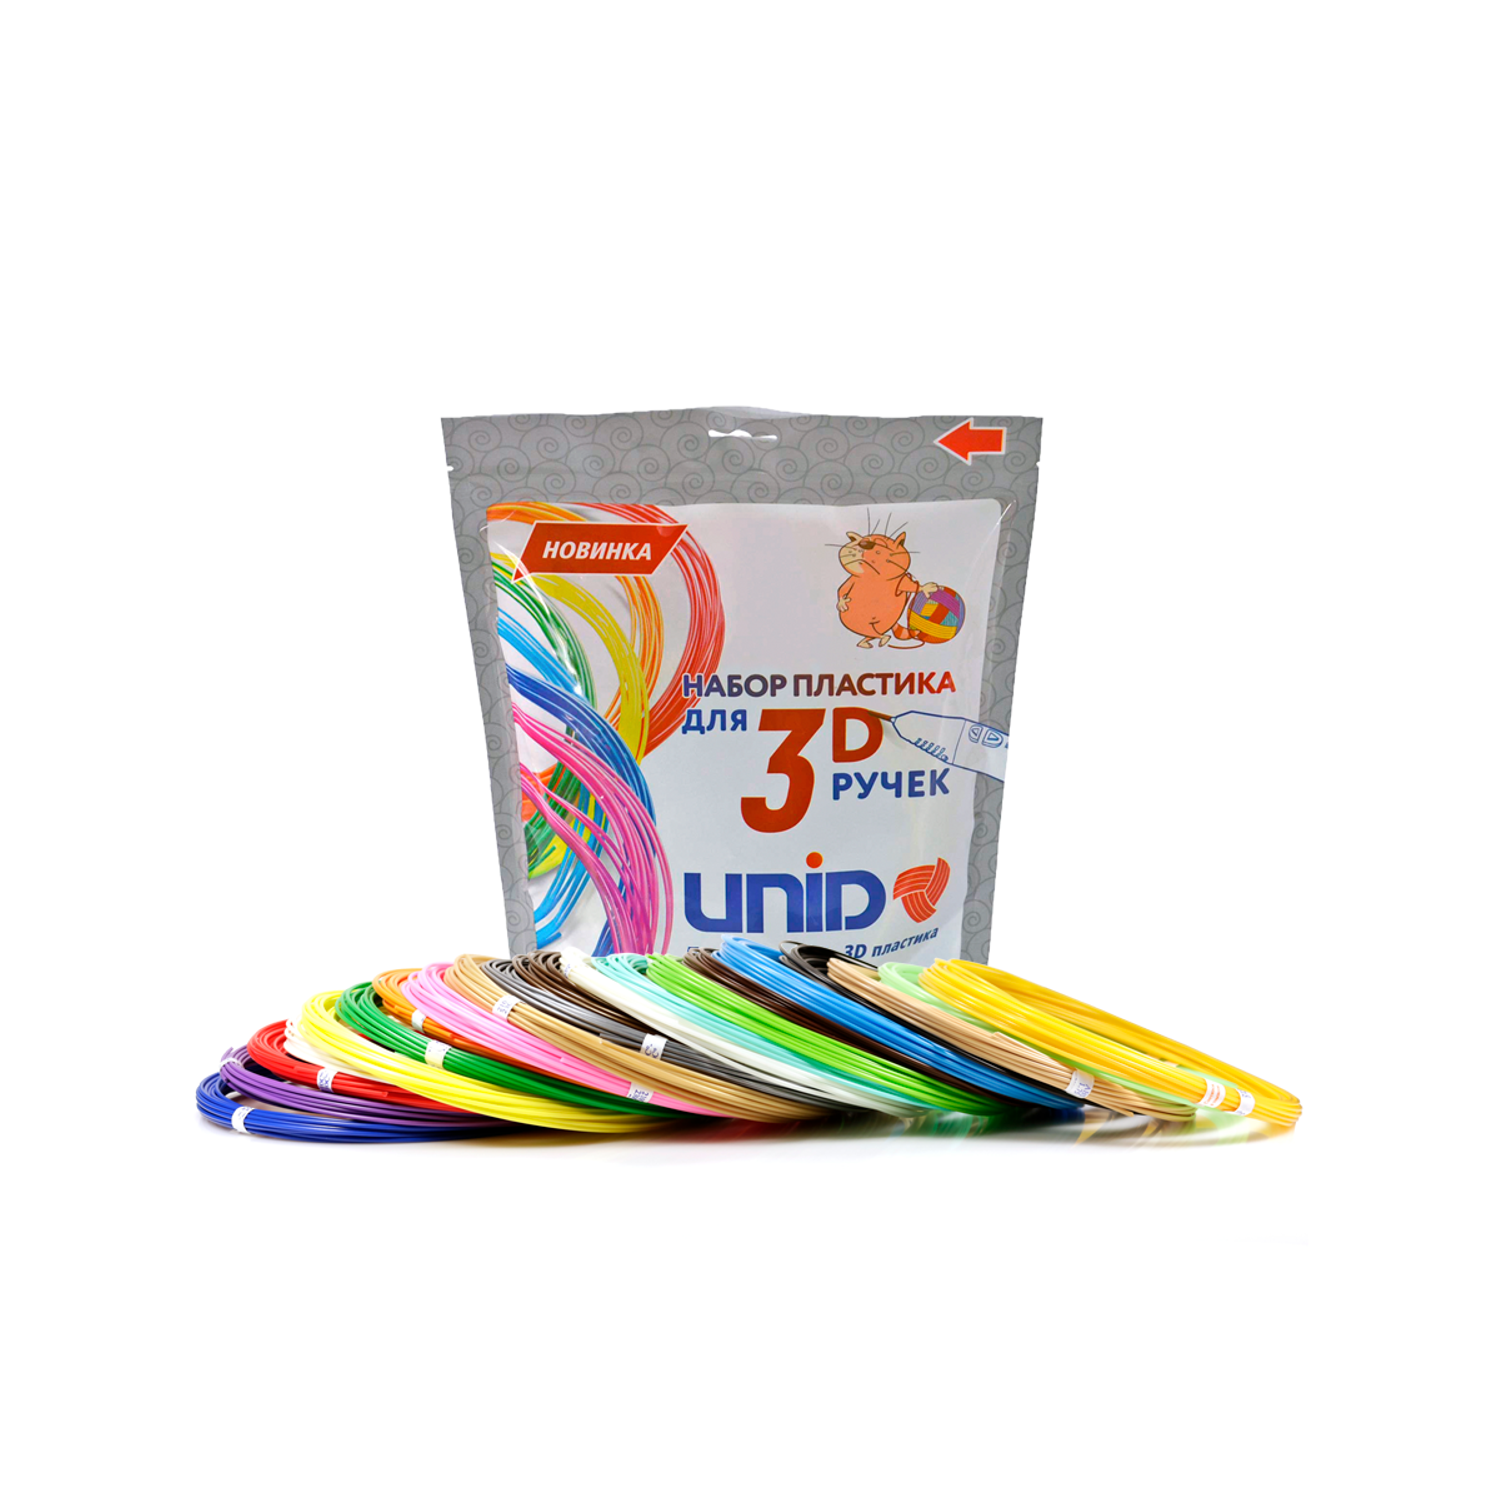 Пластик для 3д ручки UNID ABS20 - фото 1